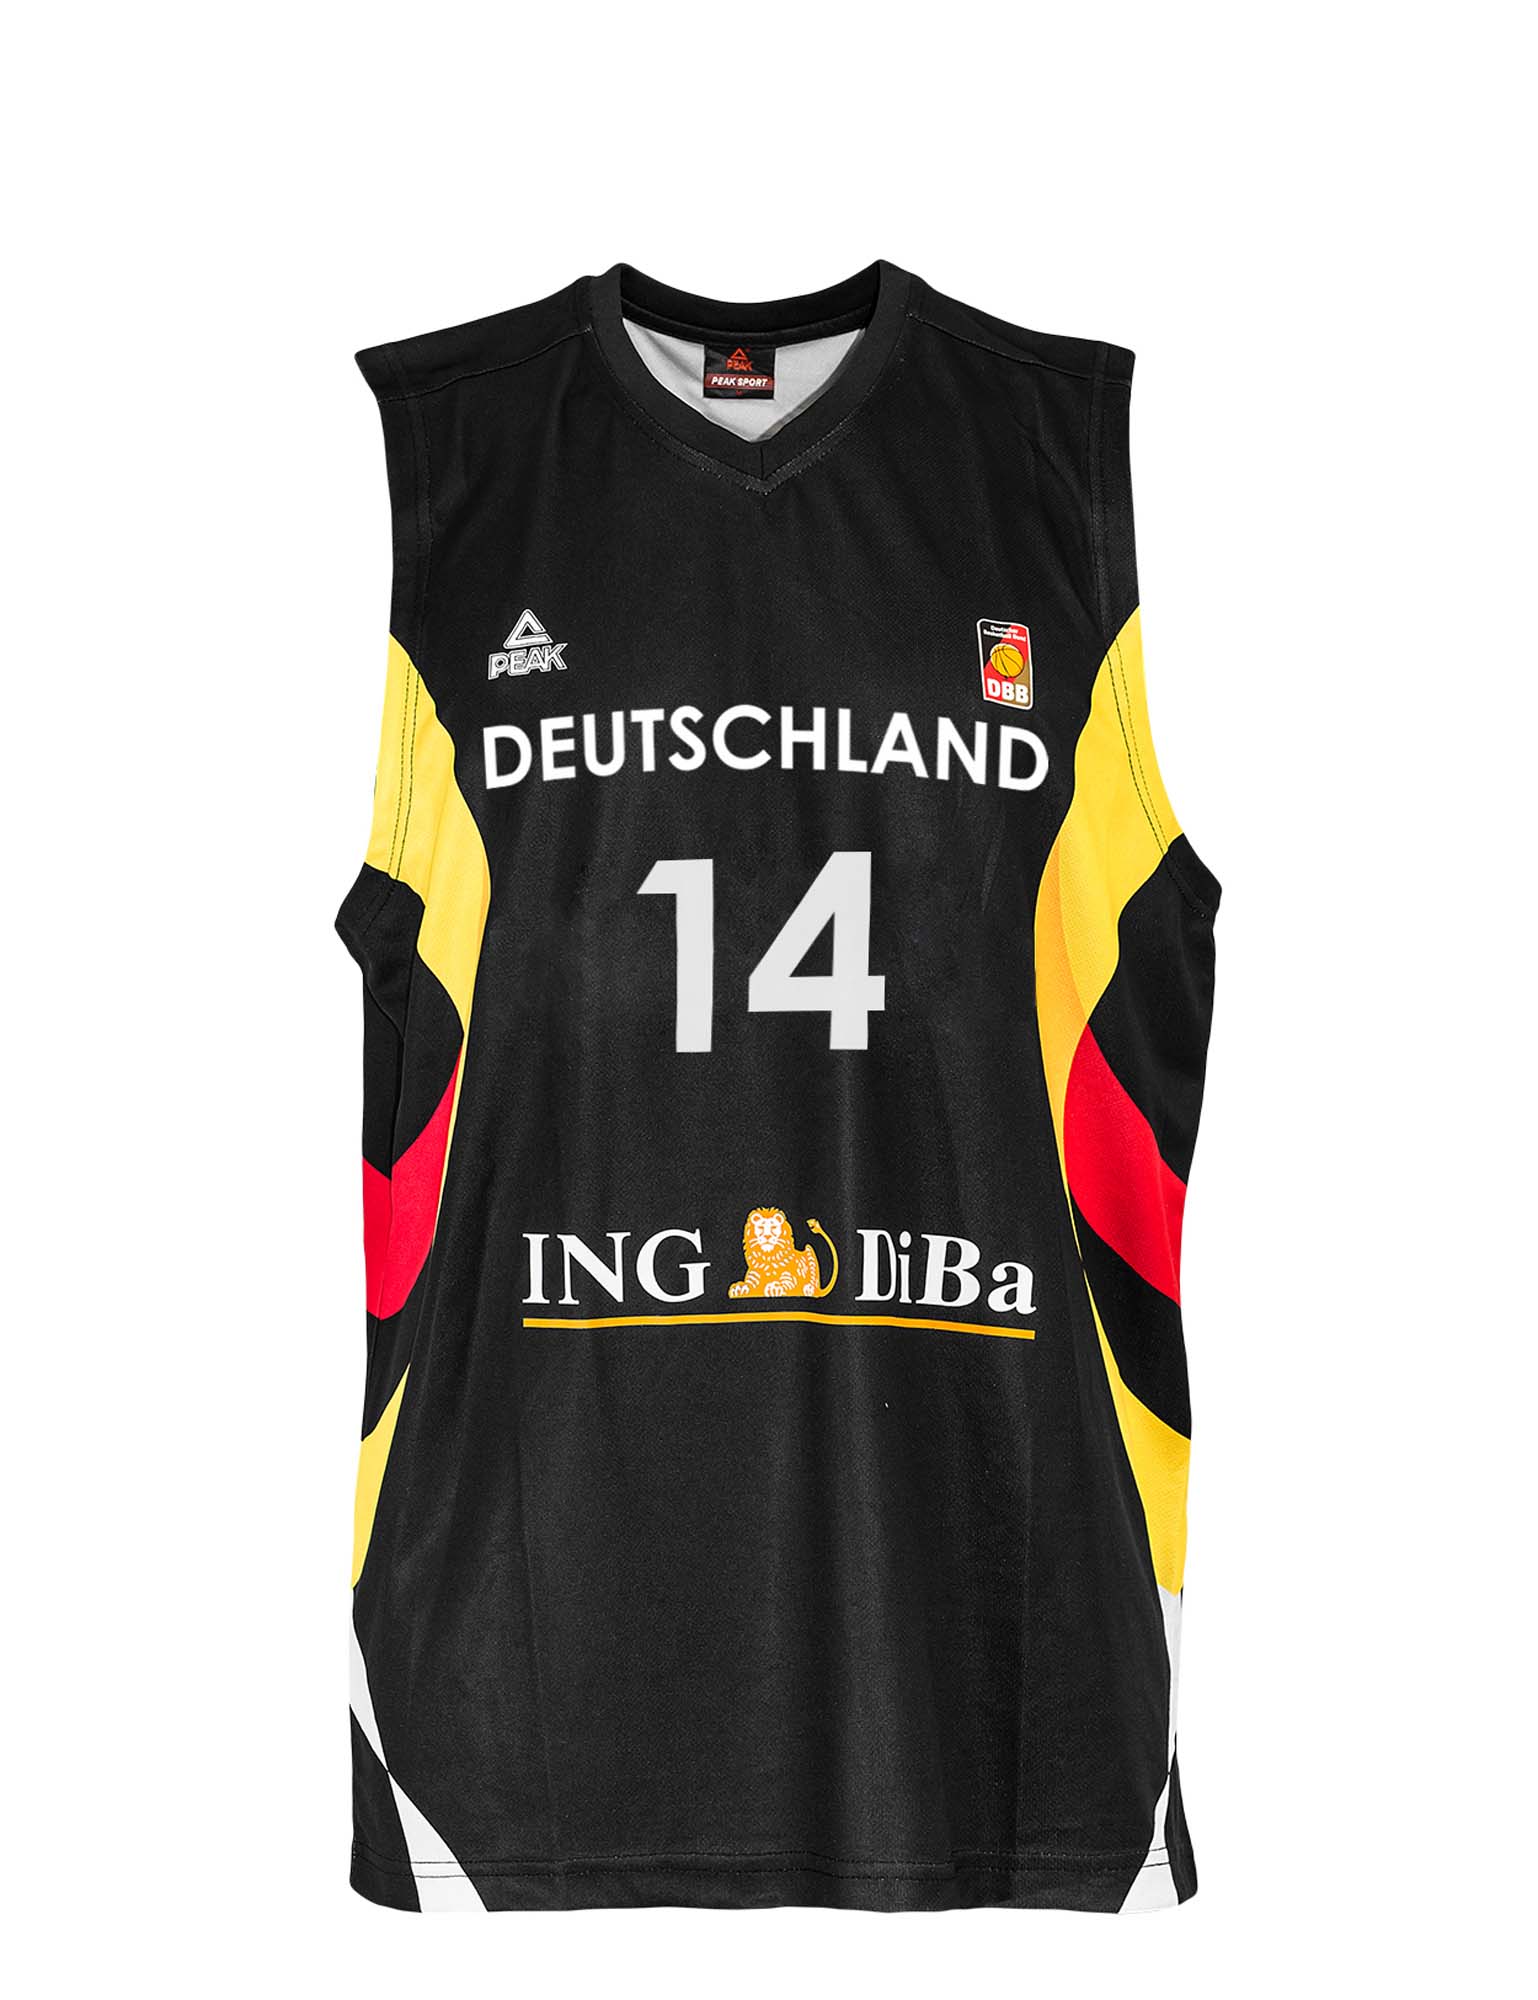 nowitzki deutschland jersey